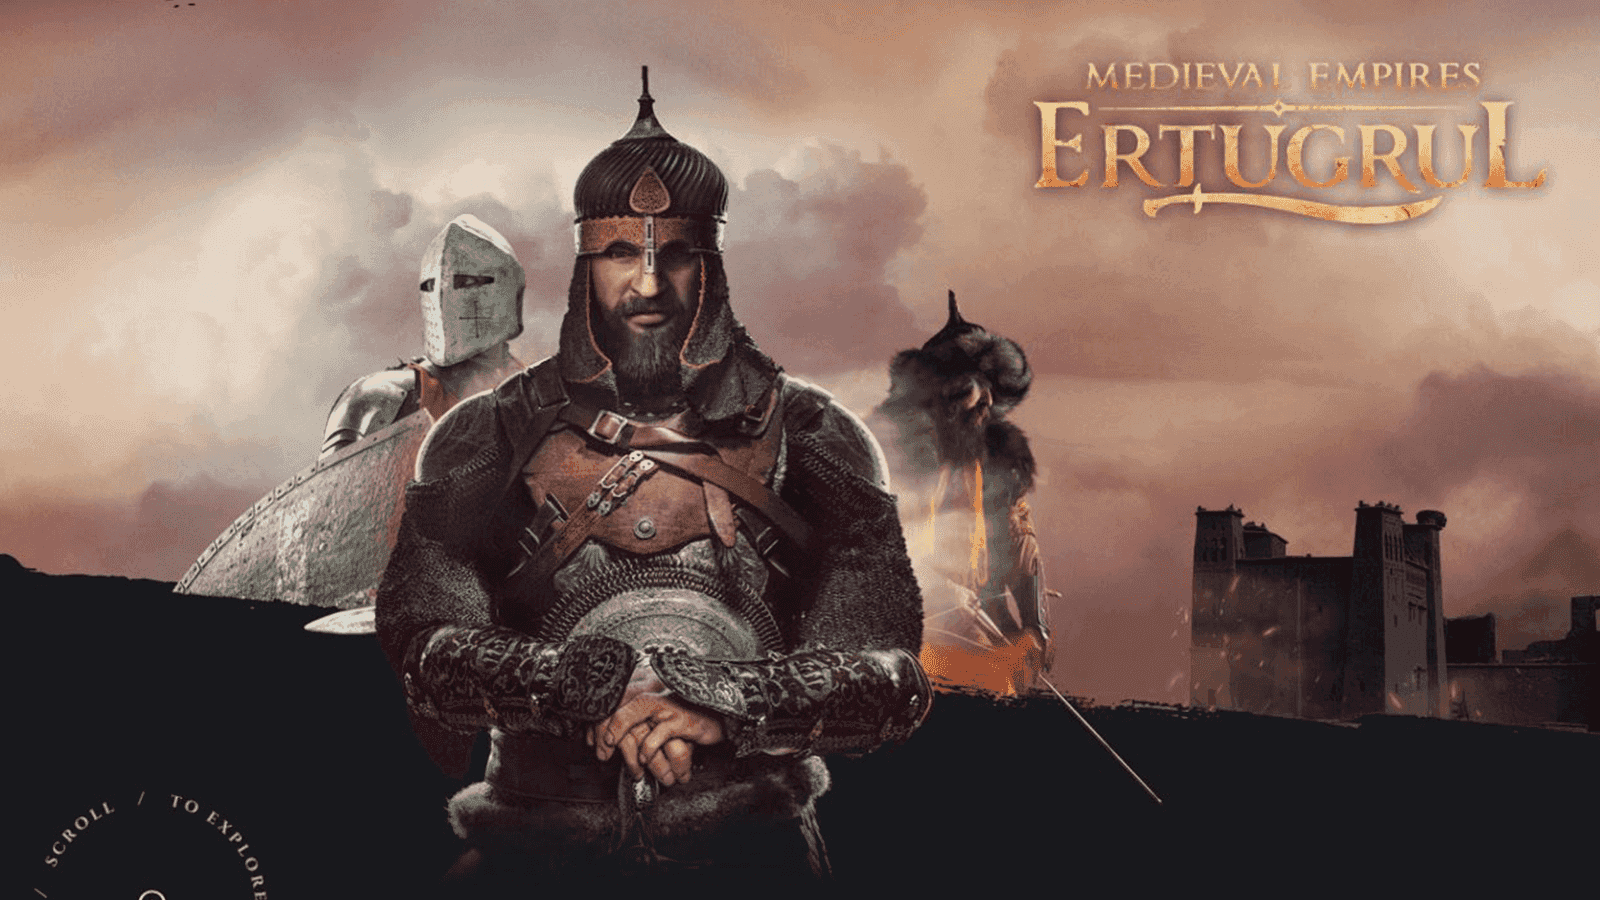 Los imperios medievales: Ertugrul - Reseña del juego